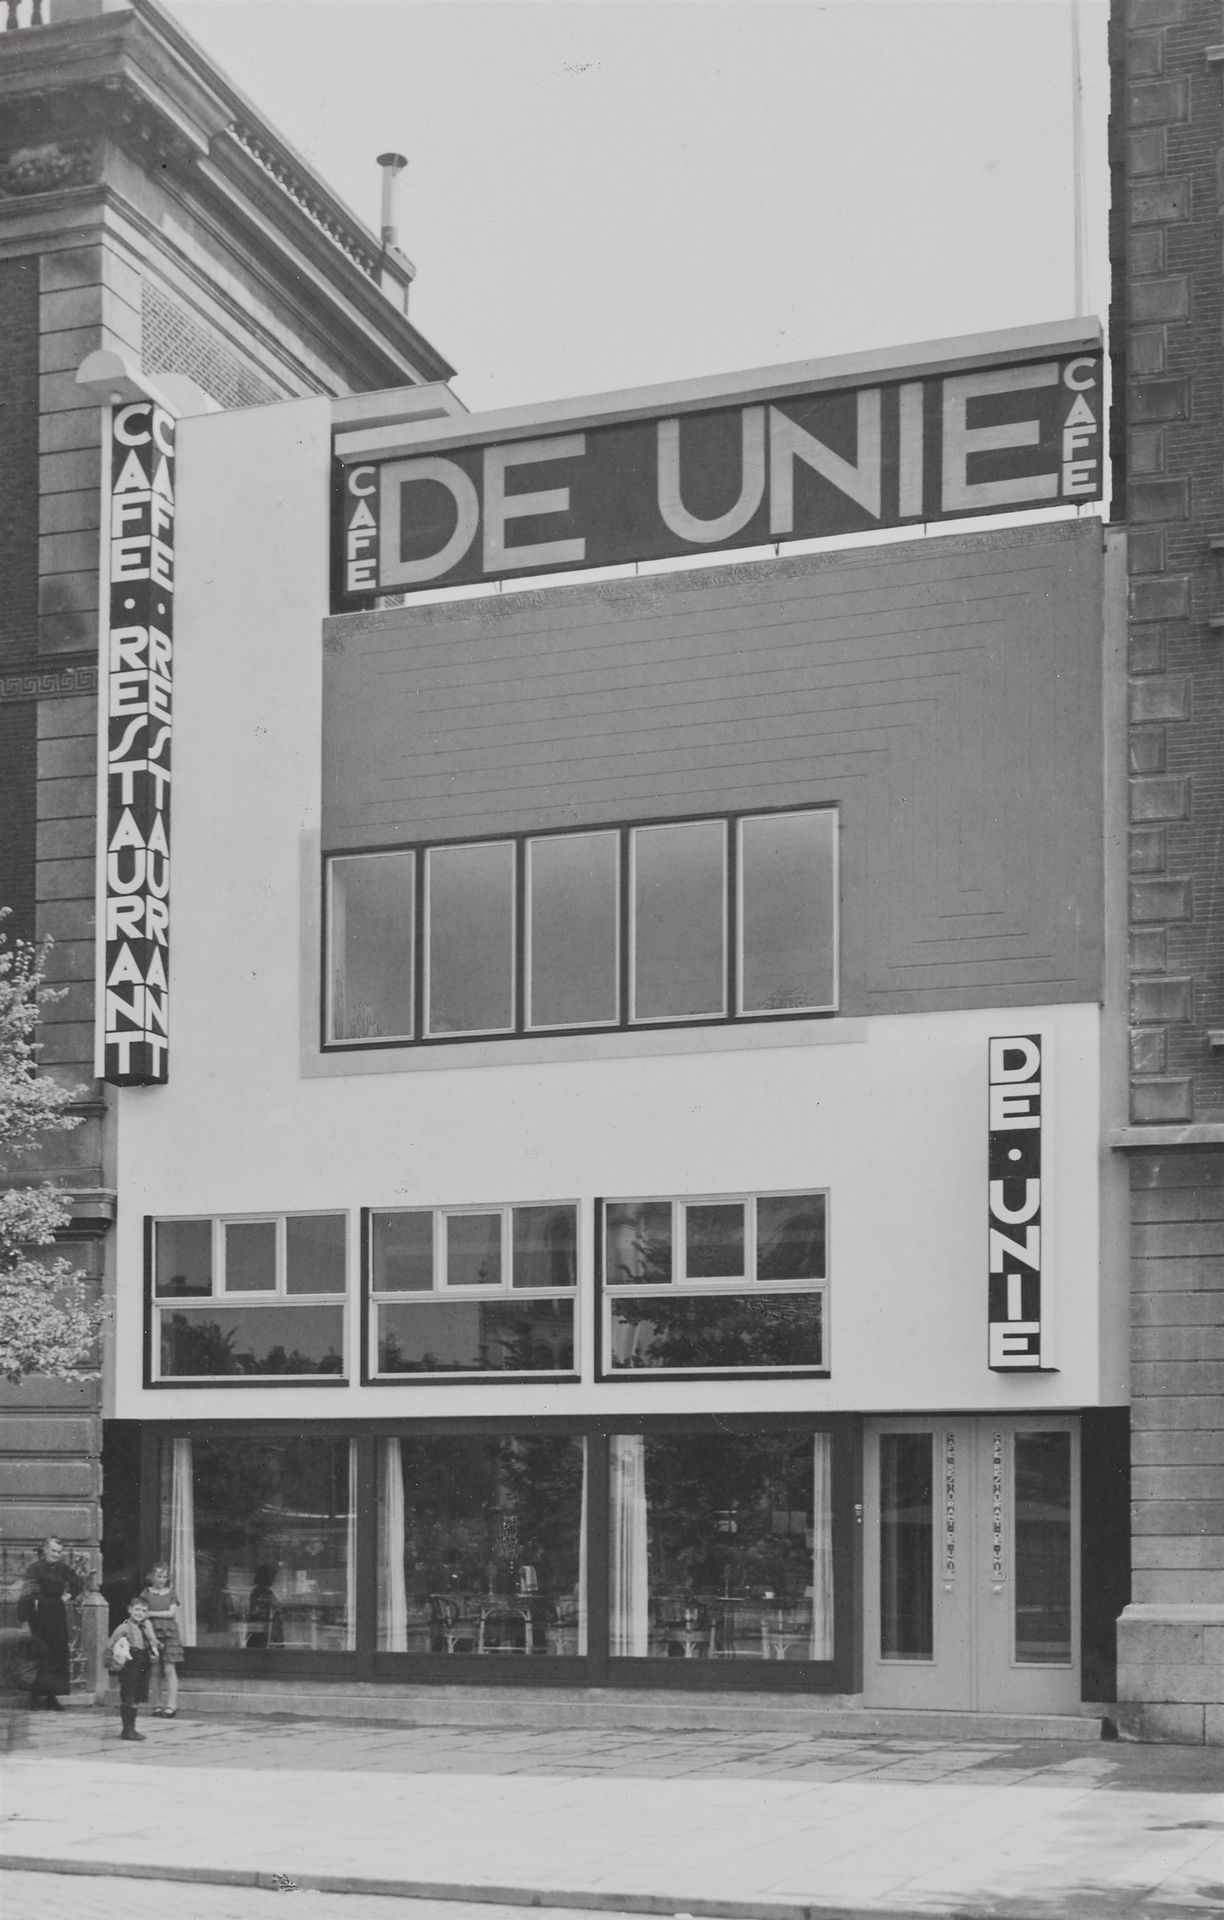 Evert Marinus von Ojen Evert Marinus von Ojen



Café de Unie, Rotterdam

1925

&hellip;